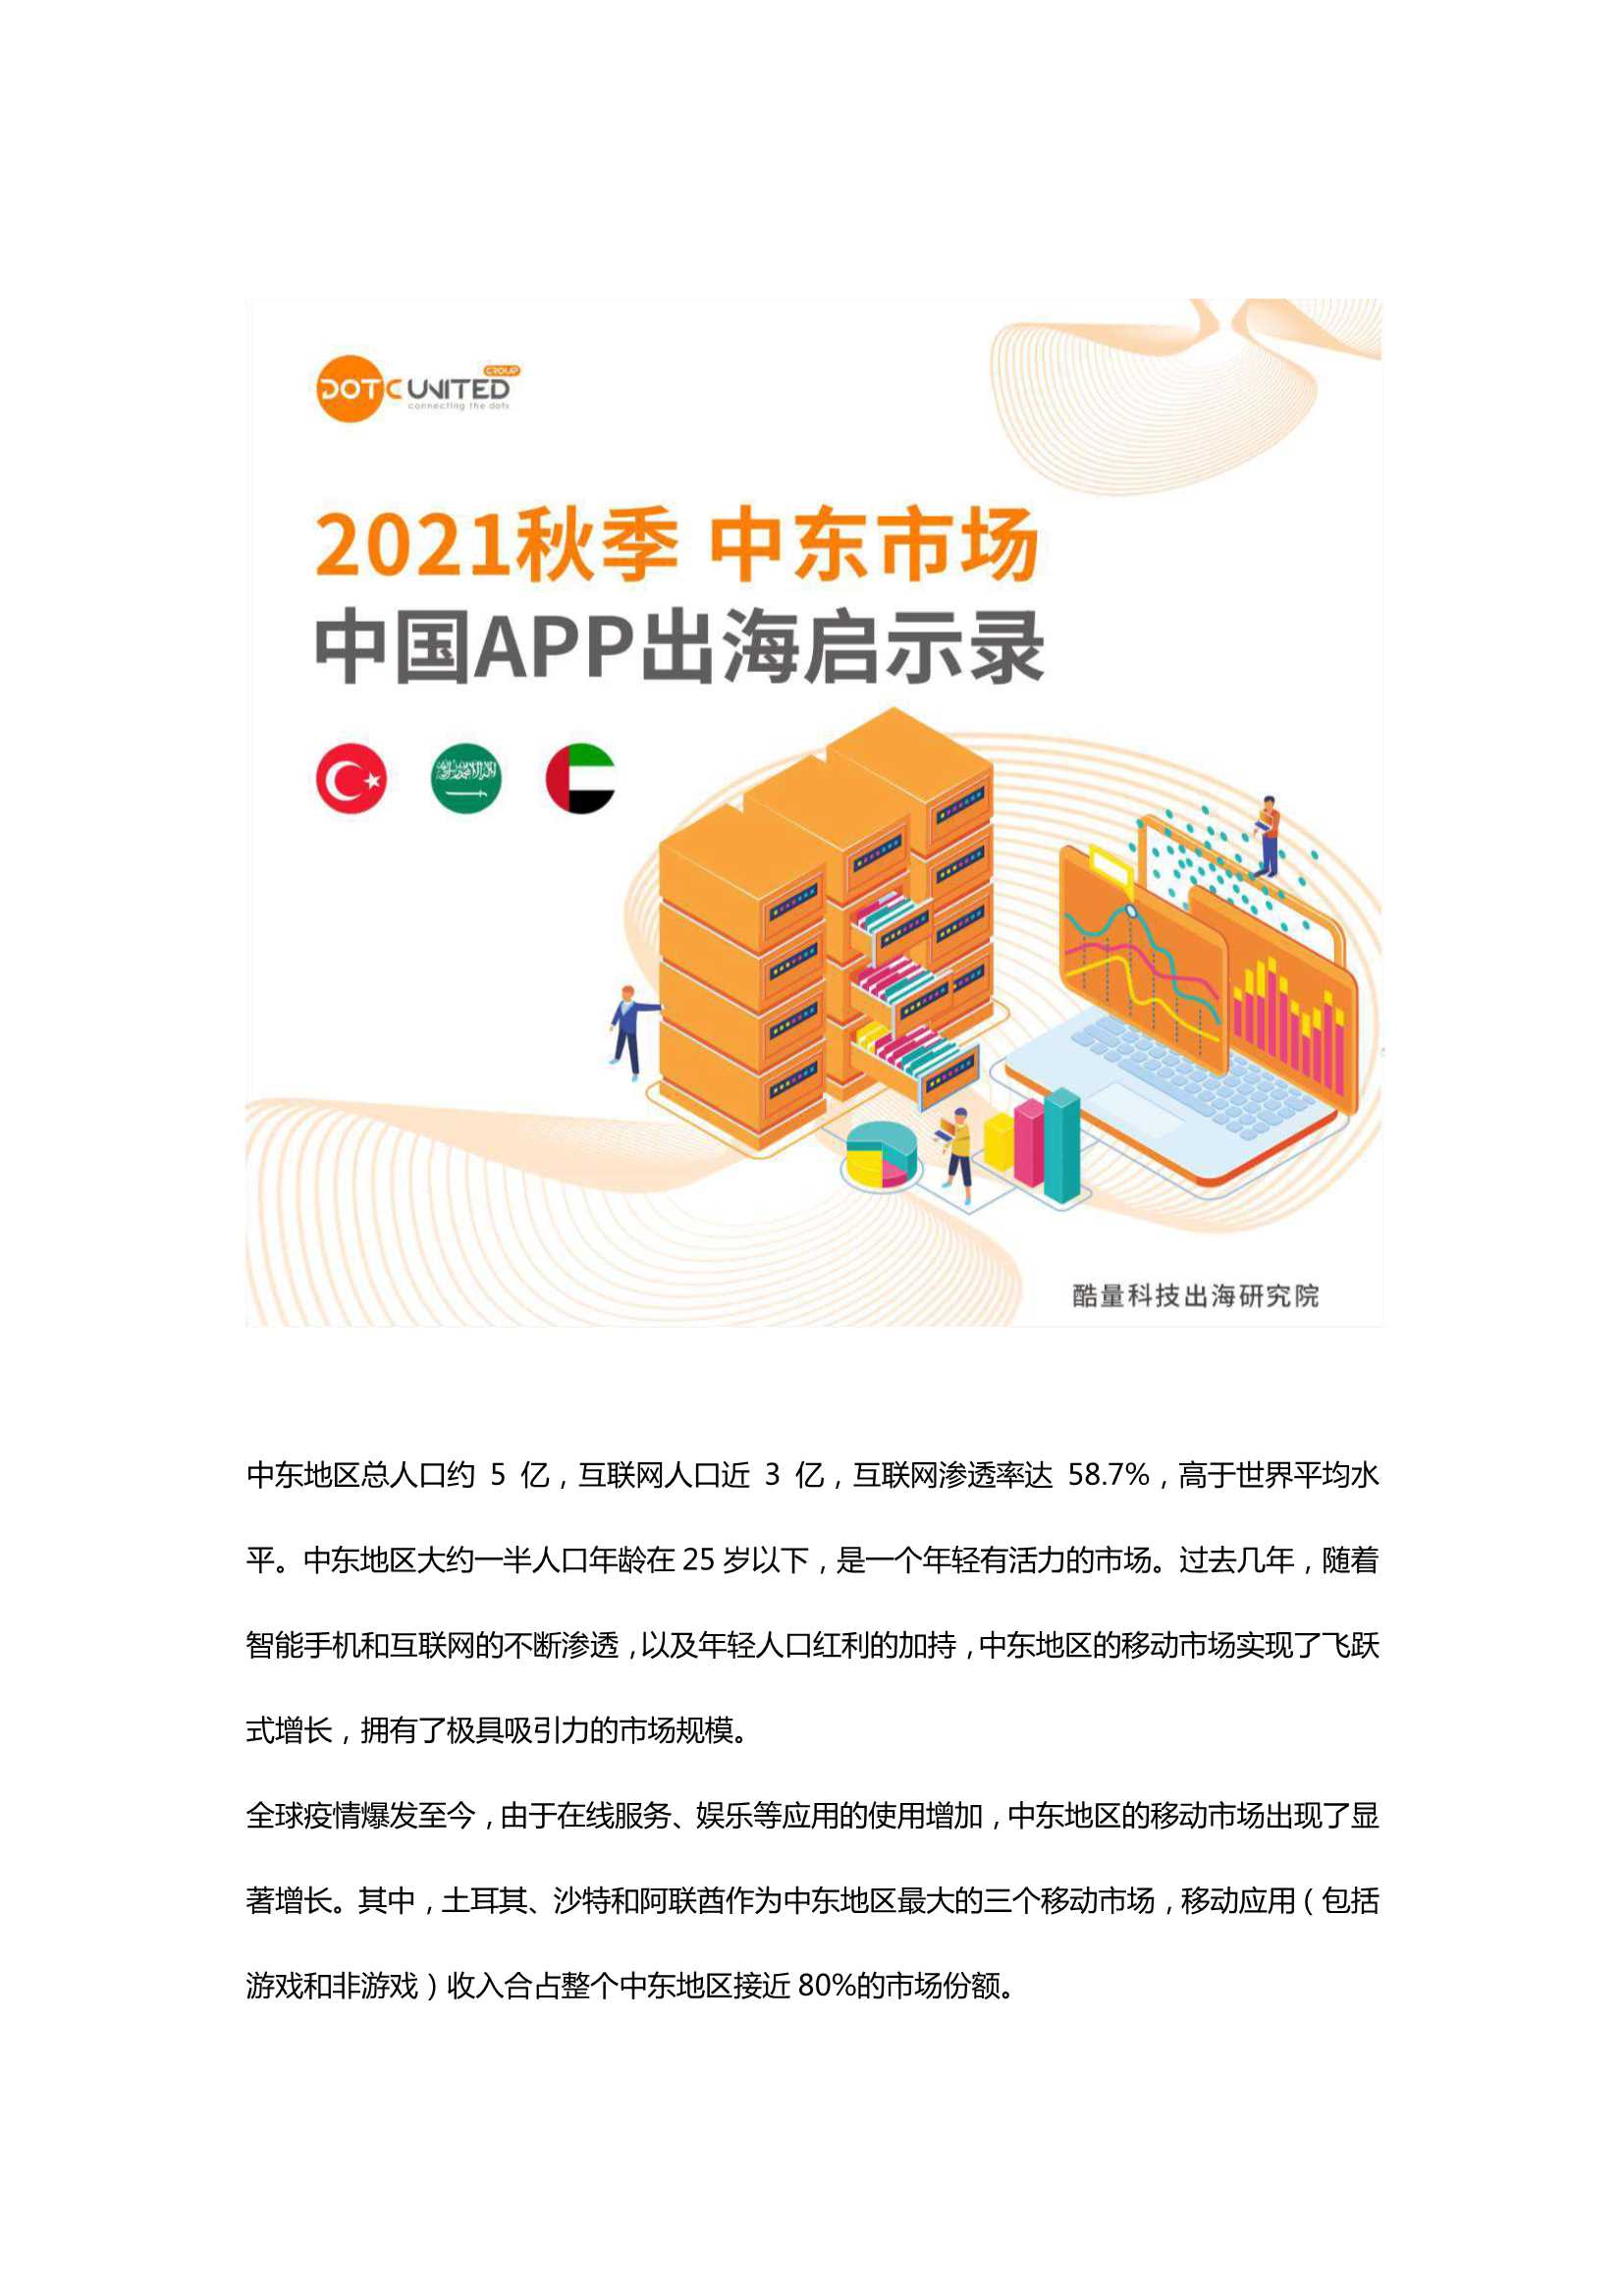 DUG-2021秋季中东市场中国APP出海启示录-2021.11-40页